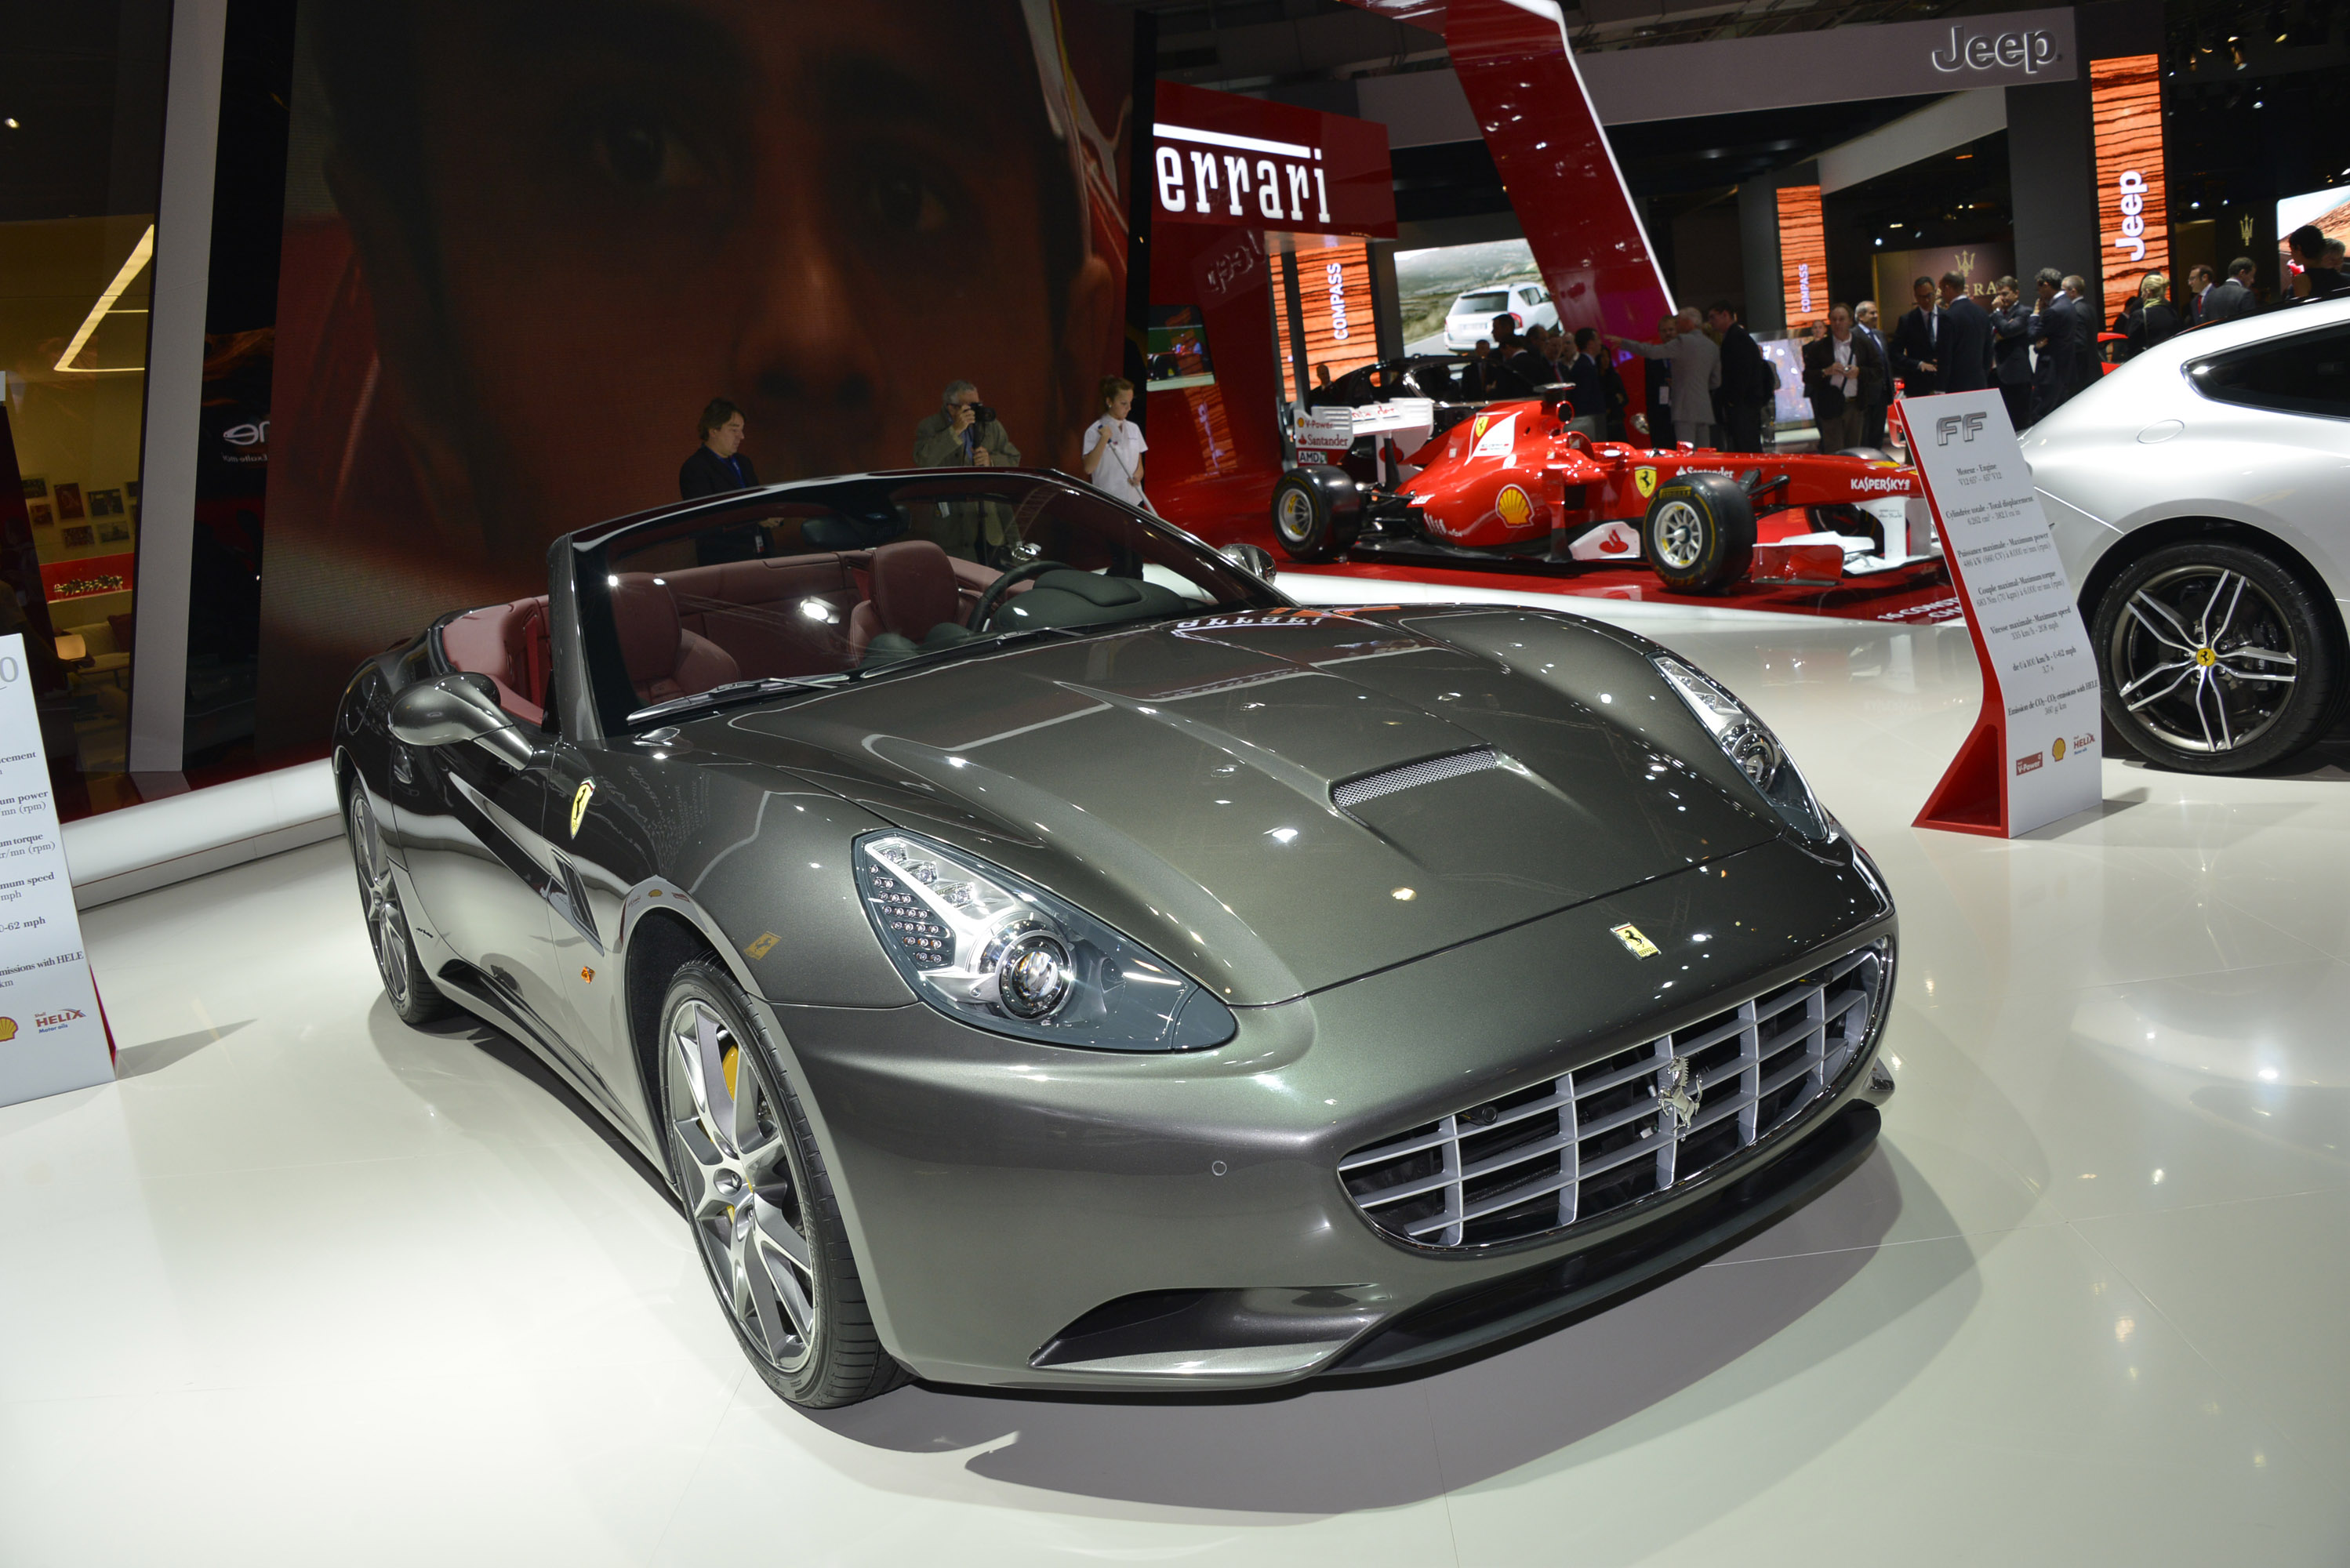 Ferrari at Paris Motor Show